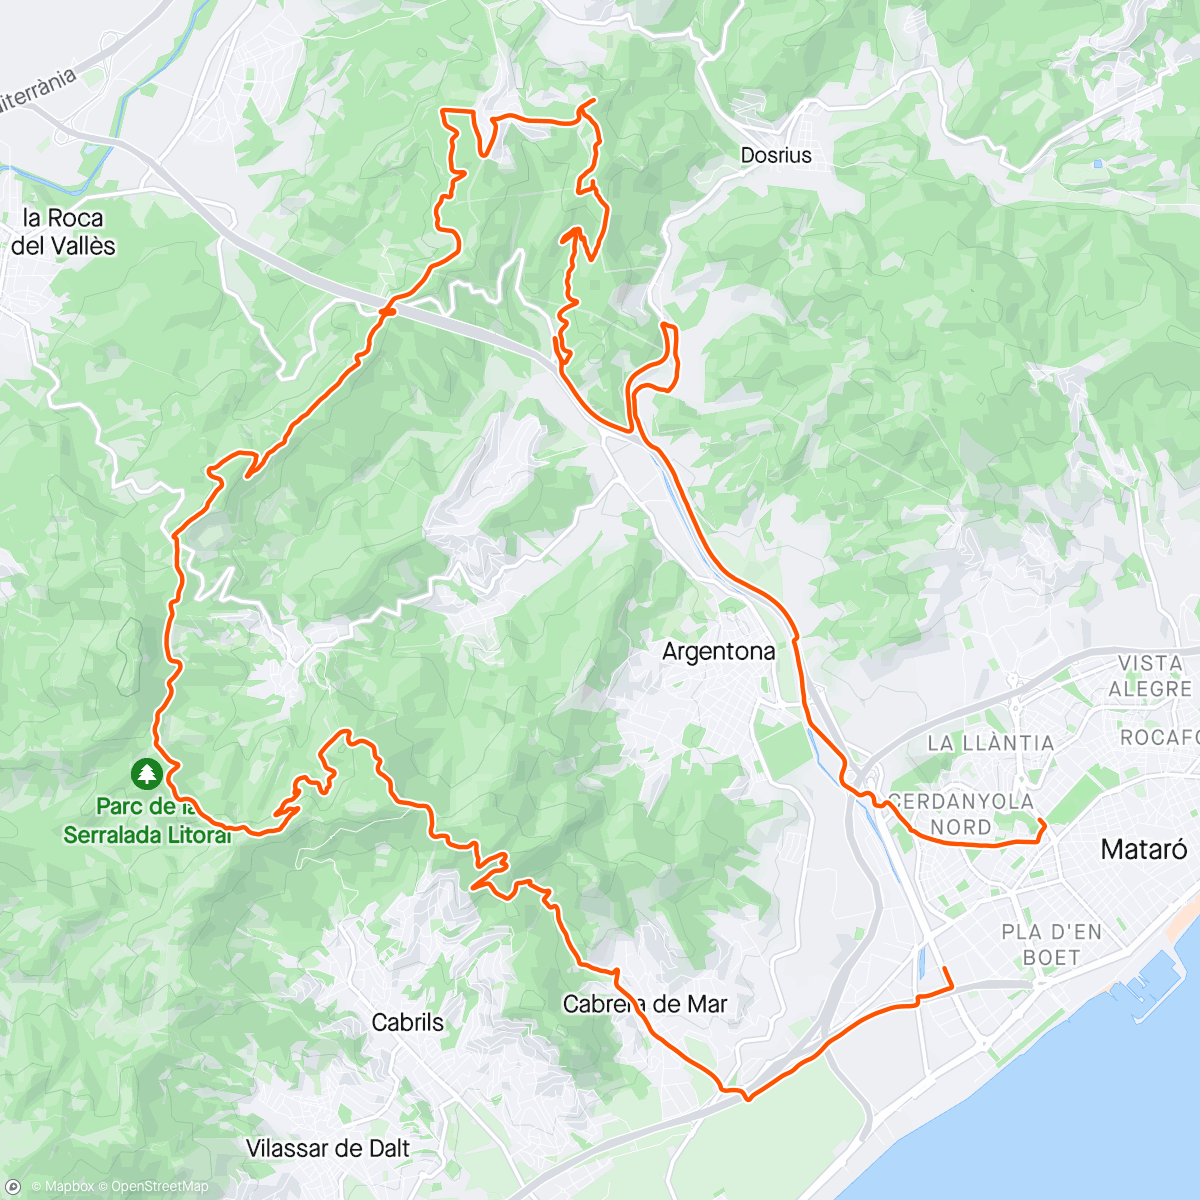 Mapa da atividade, Dominguero